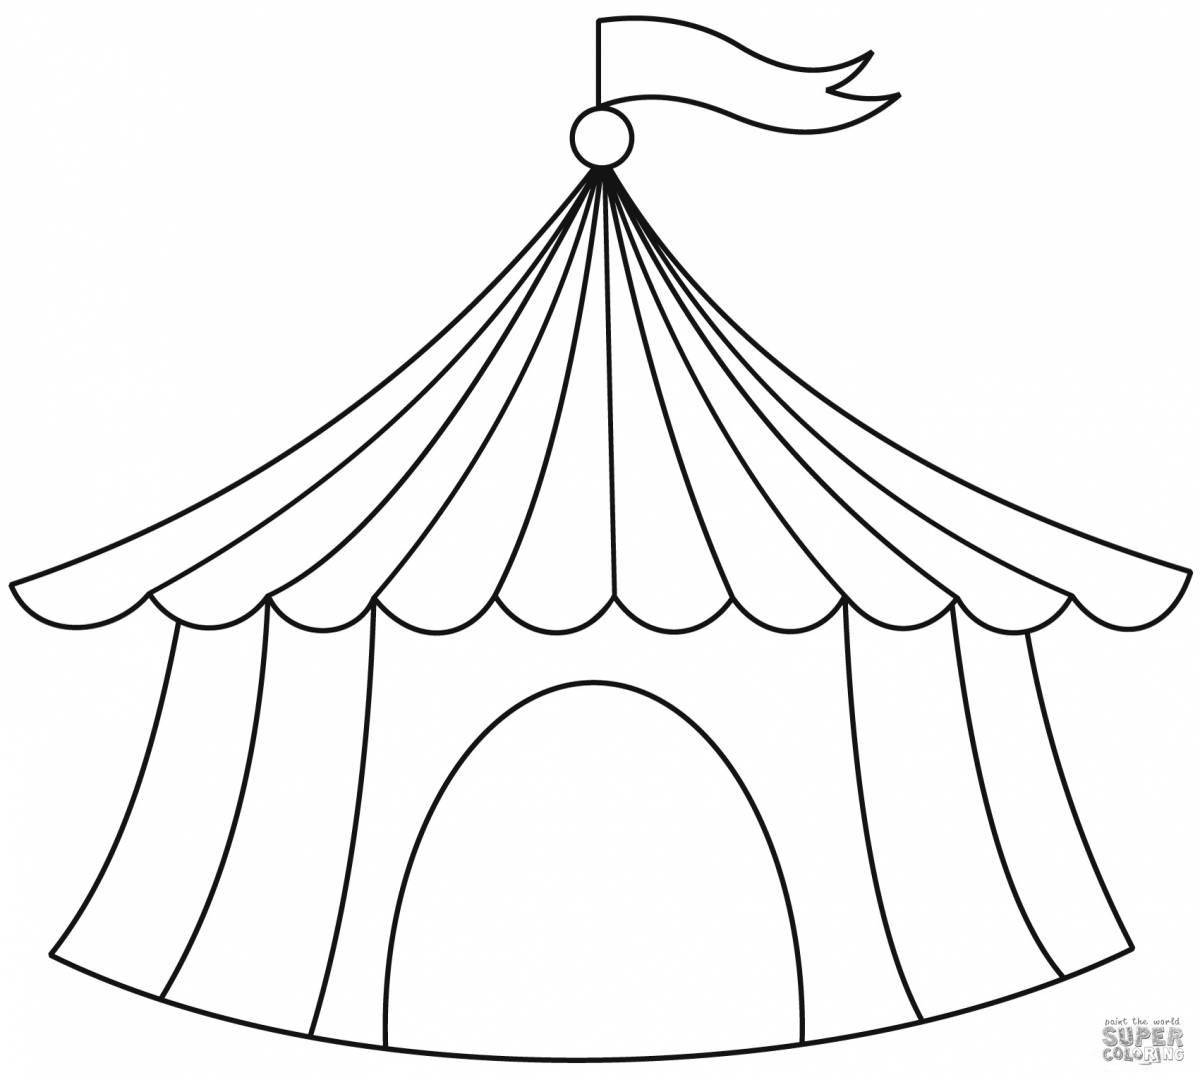 Раскраска ослепительная цирковая палатка